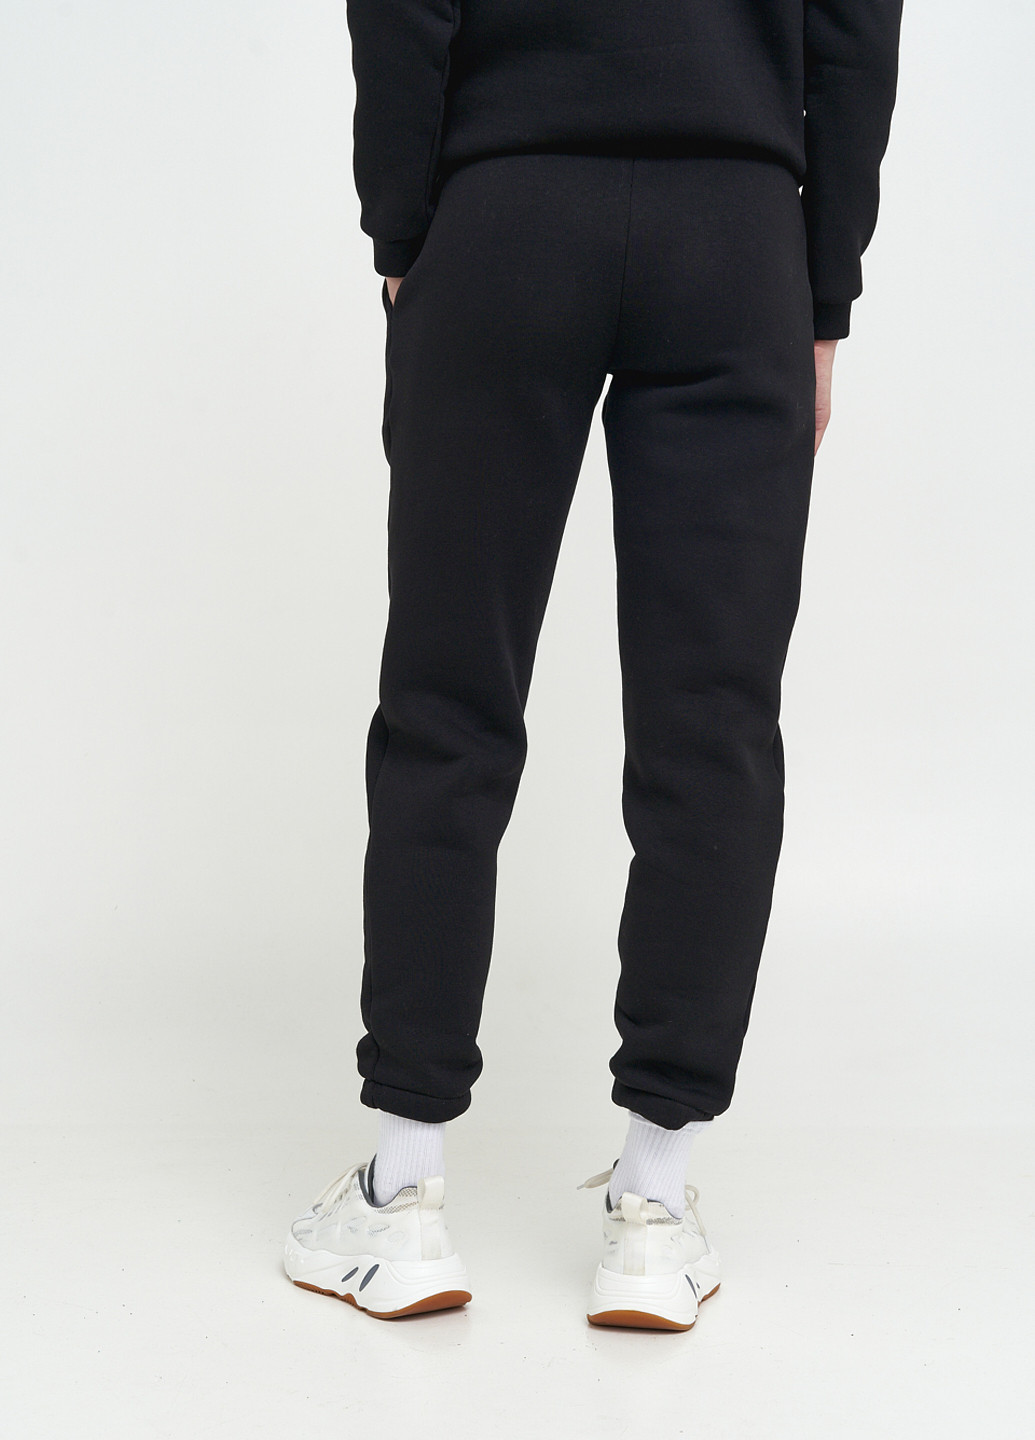 Спортиві брюки-джогери жіночі з начосом KASTA design джогери однотонні чорні спортивні поліестер, трикотаж, фліс